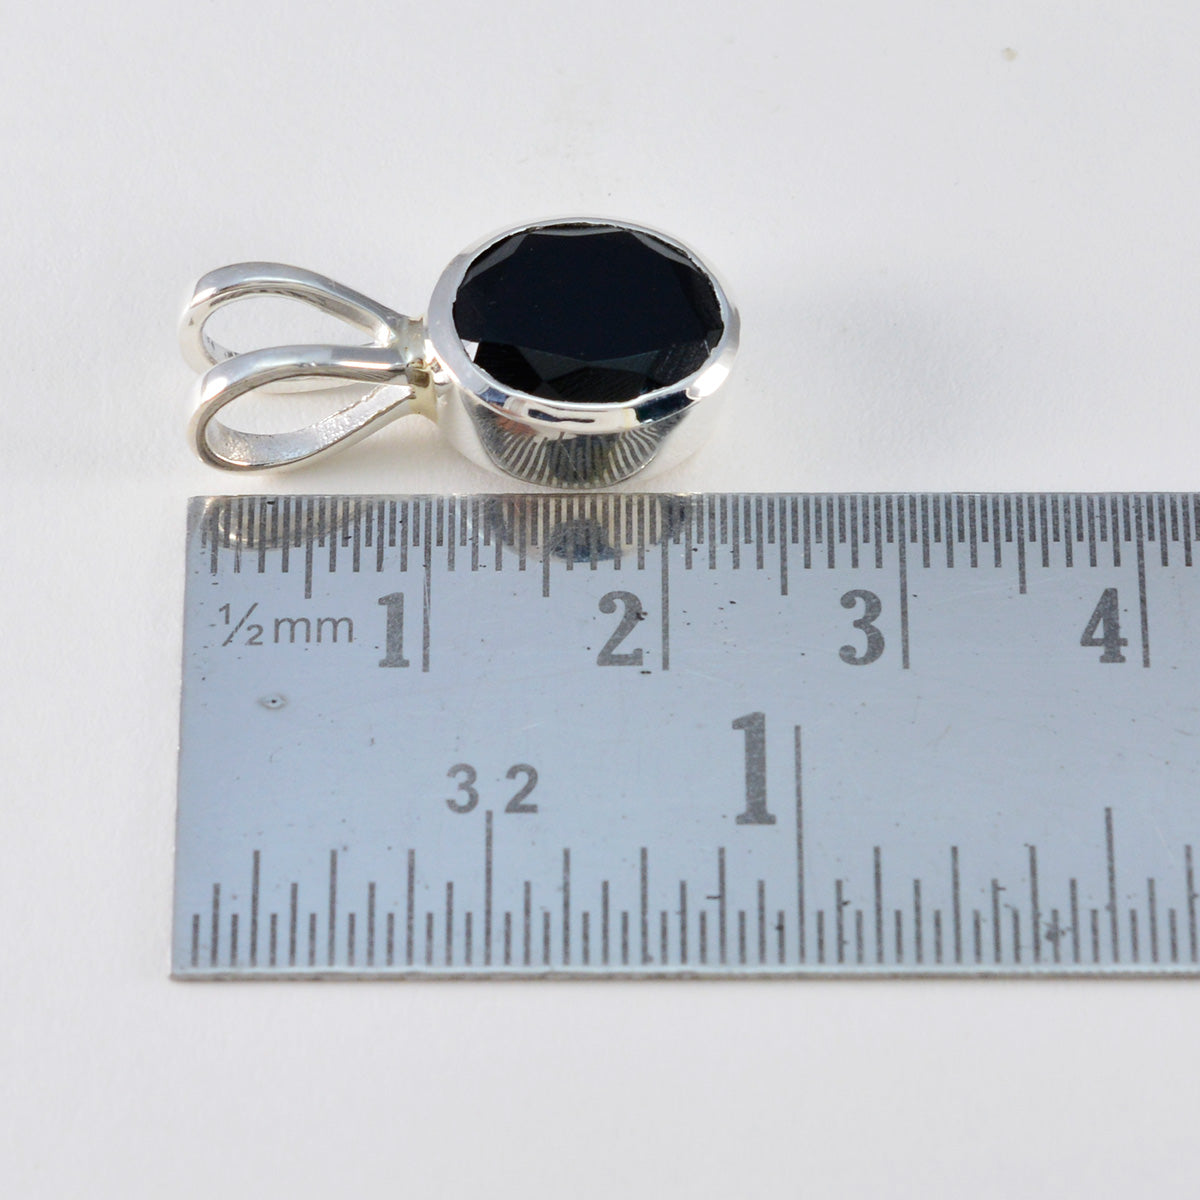 Riyo sierlijke edelstenen rond gefacetteerd zwart zwart onyx massief zilveren hanger cadeau voor Paaszondag